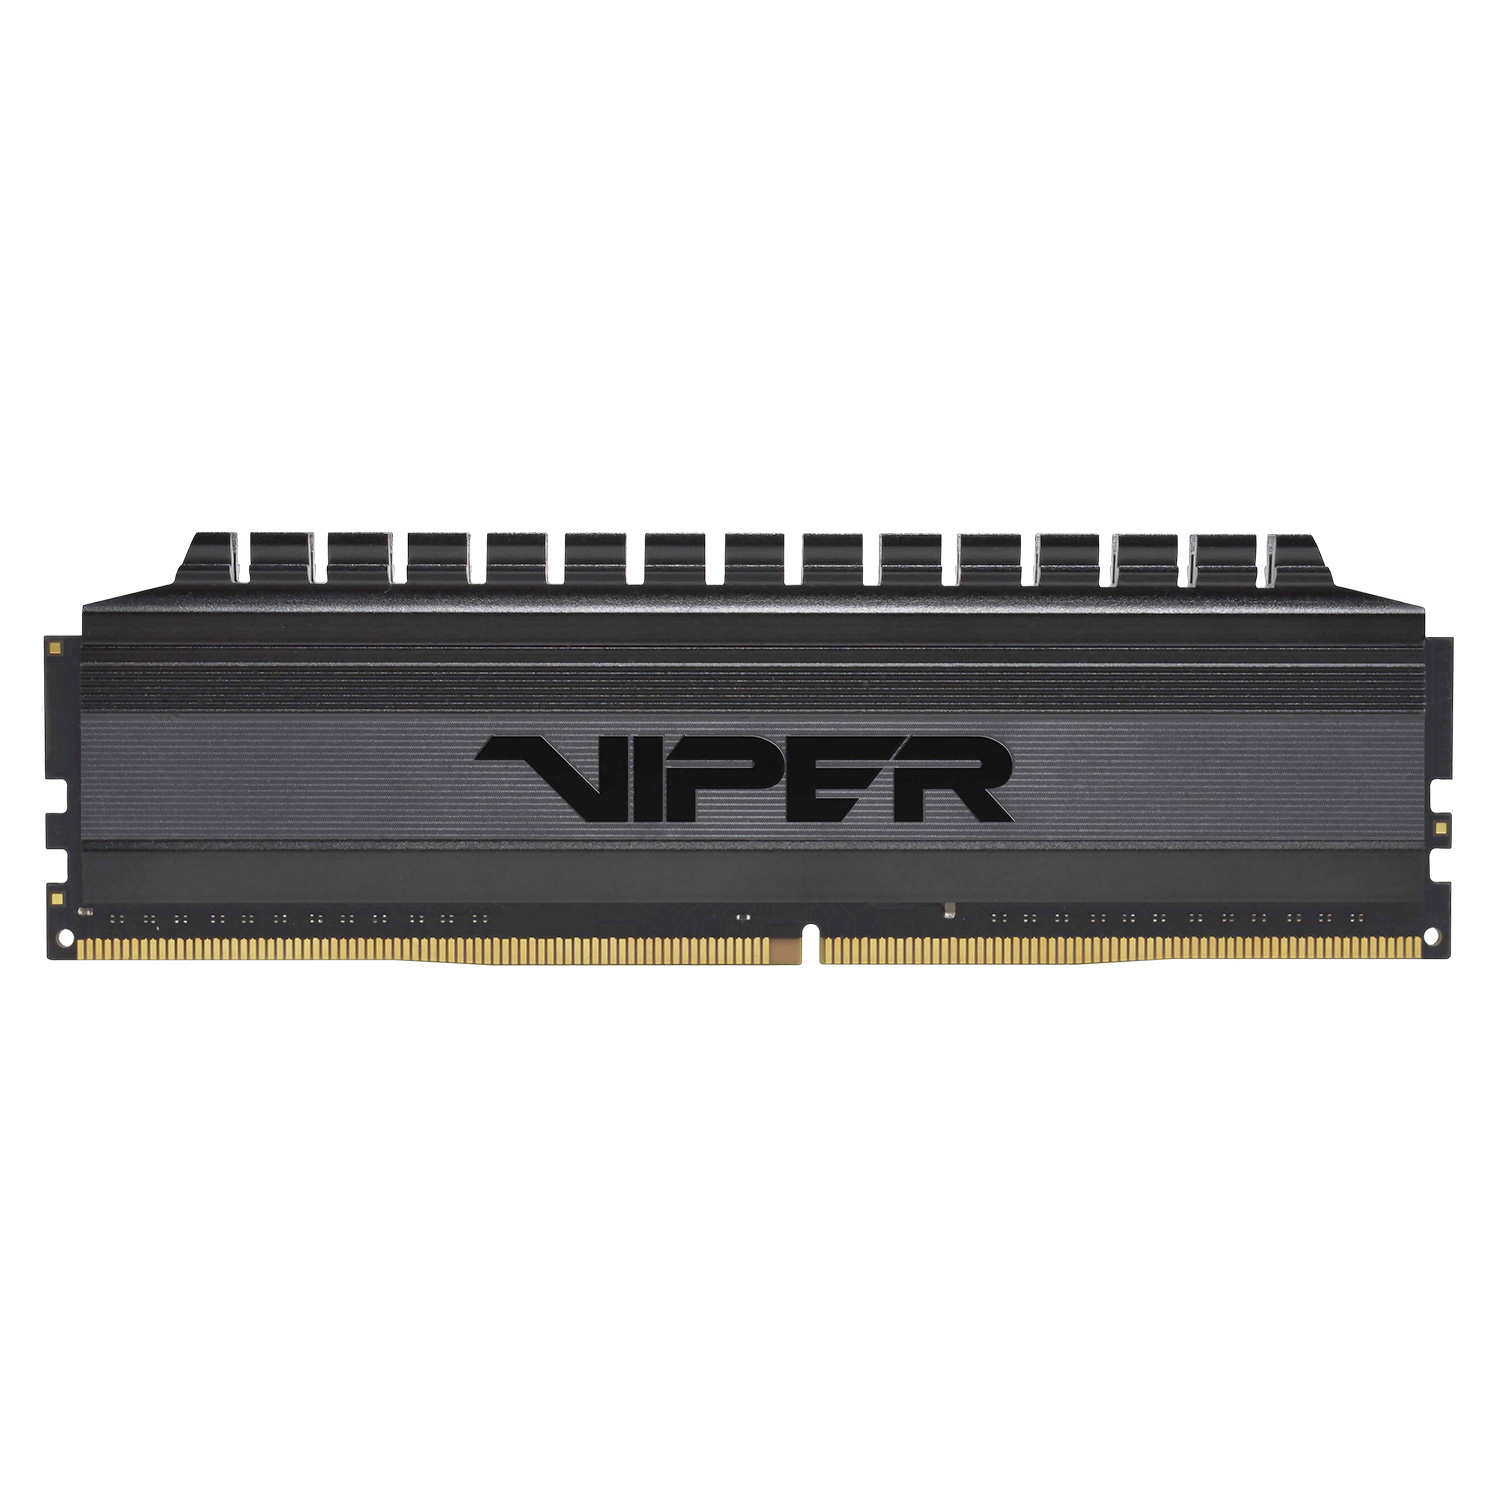 Memória RAM Patriot Viper 4 Blackout 16GB (2x8G) DDR4 / 3600MHz -(PVB416G360C8K)